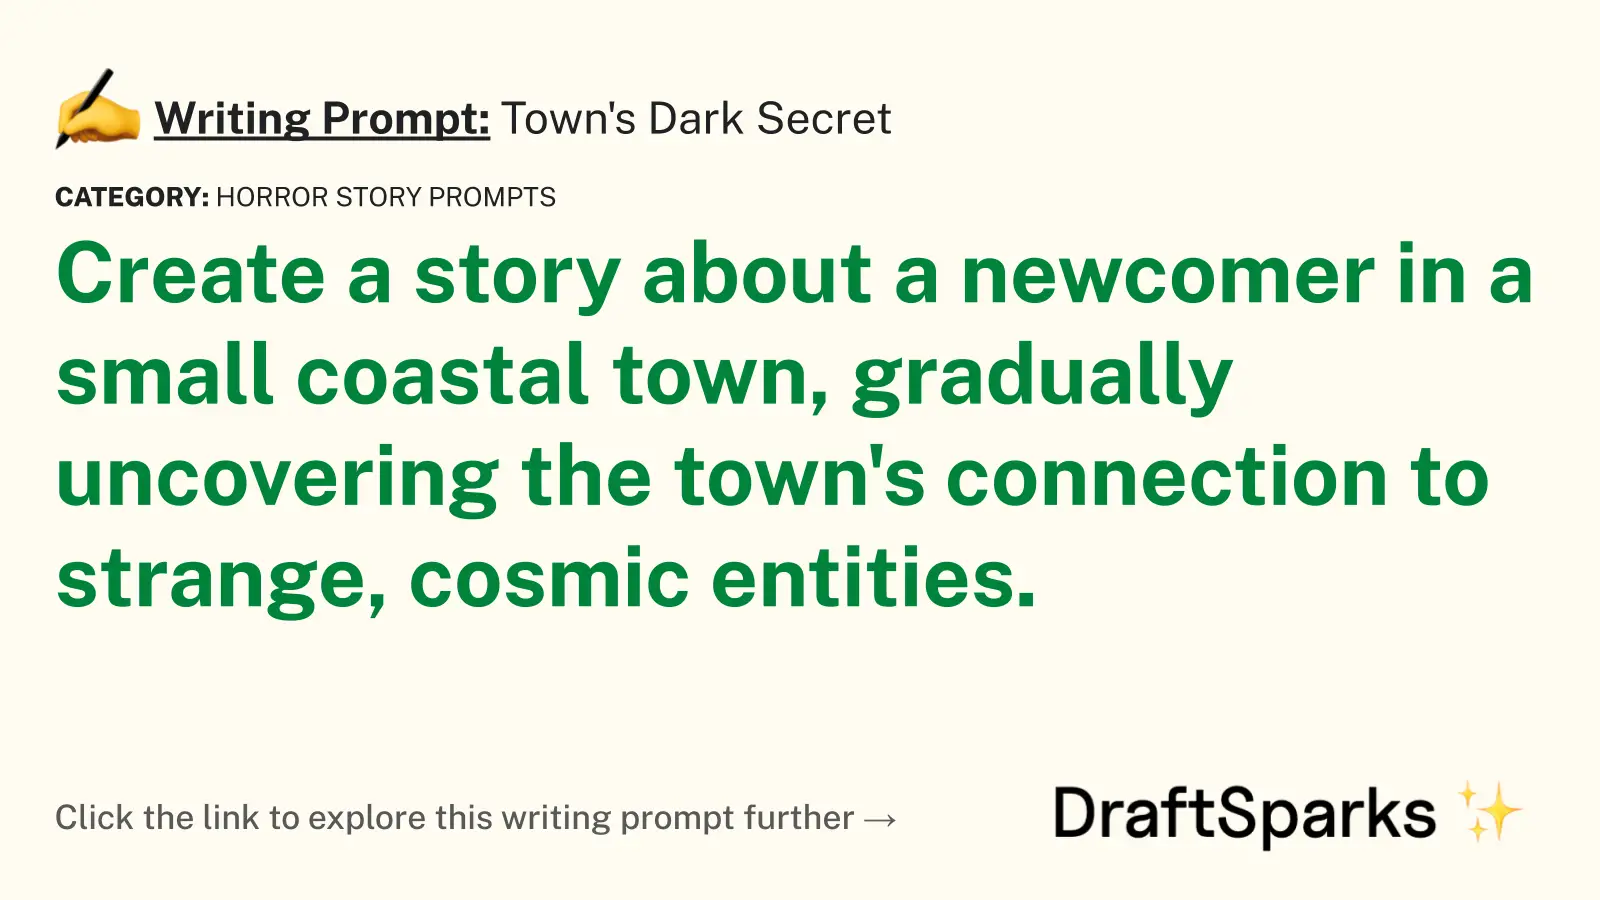 Town’s Dark Secret